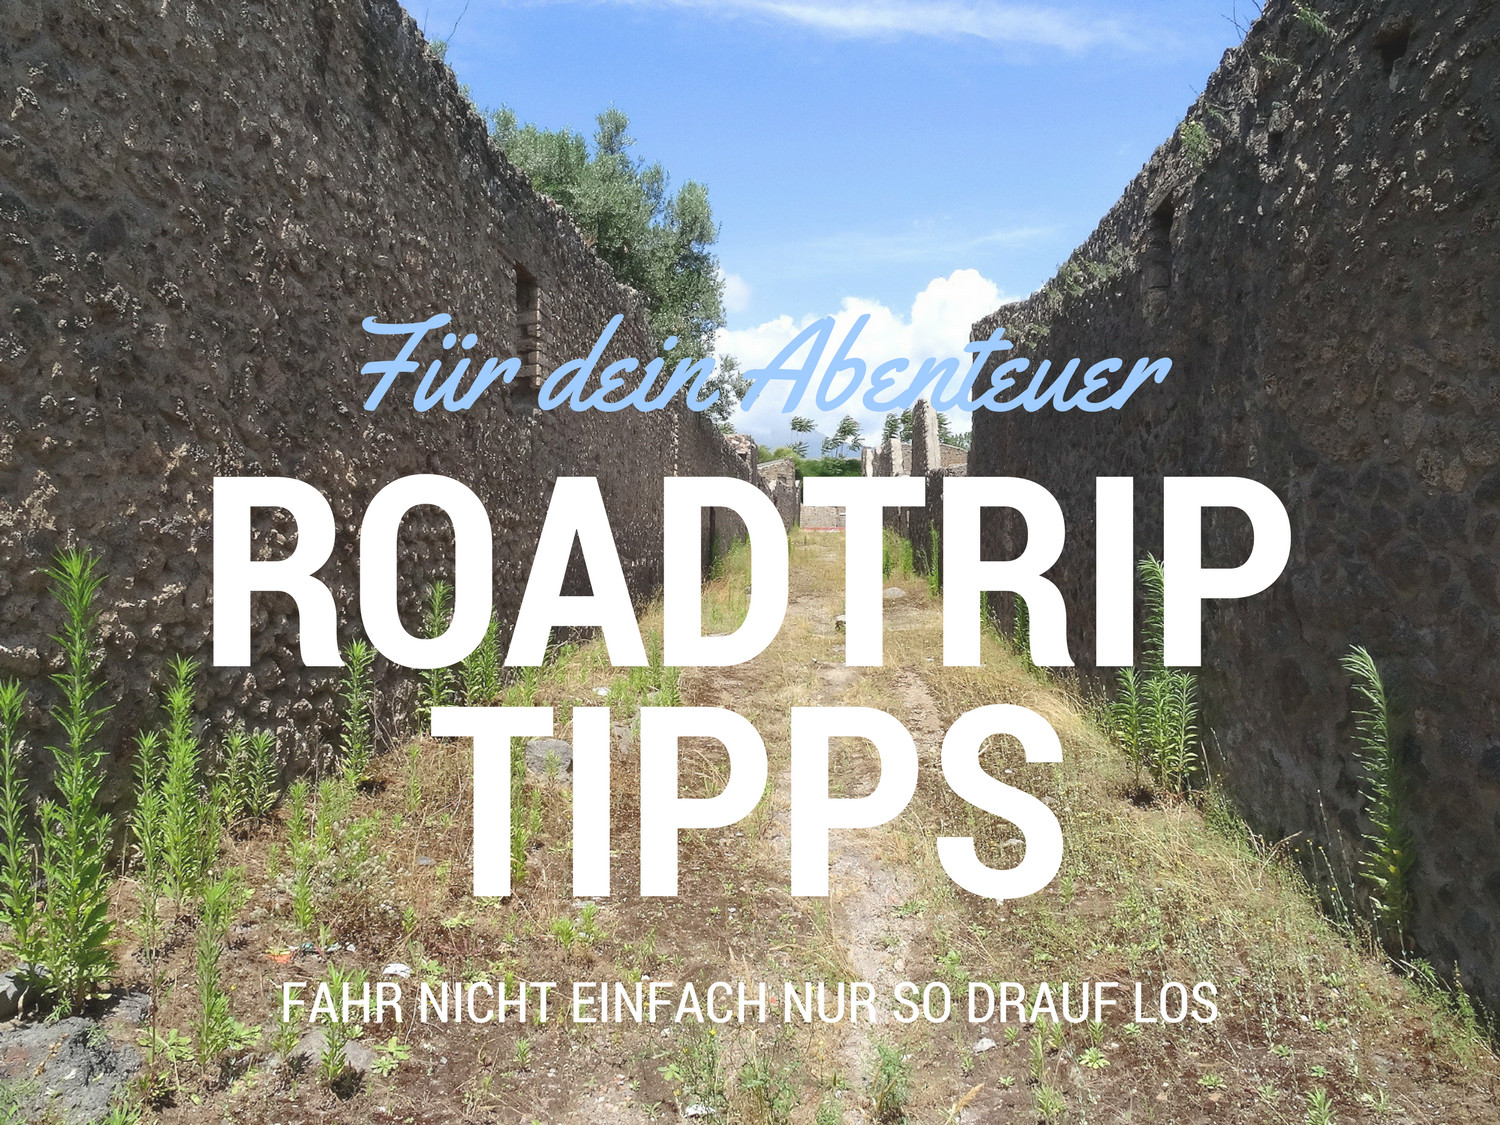 Roadtrip Tipps